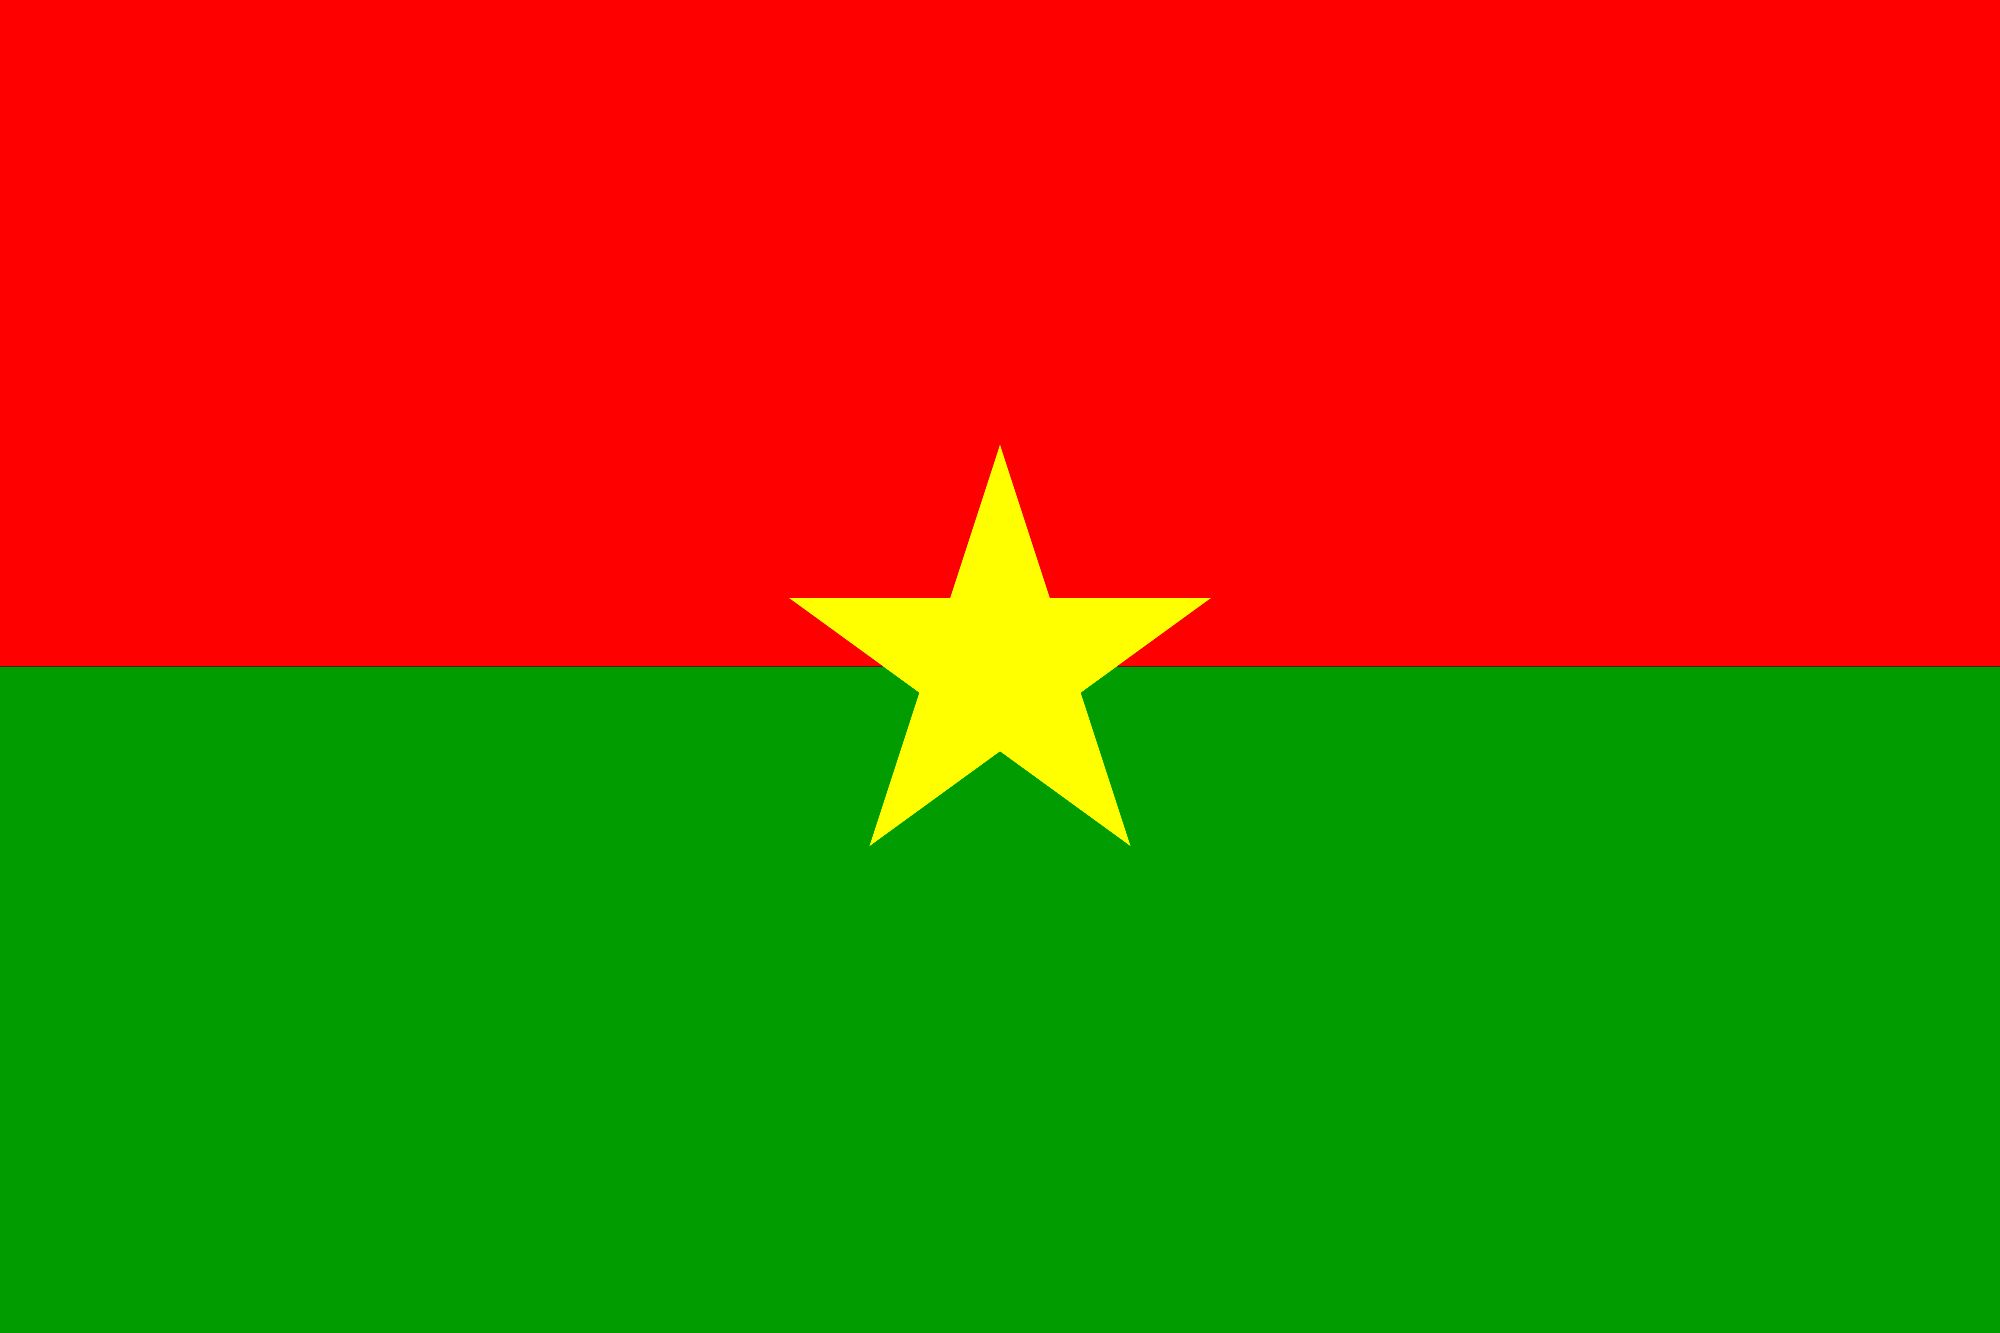 At least 23 killed in a terrorist attack in Burkina Faso